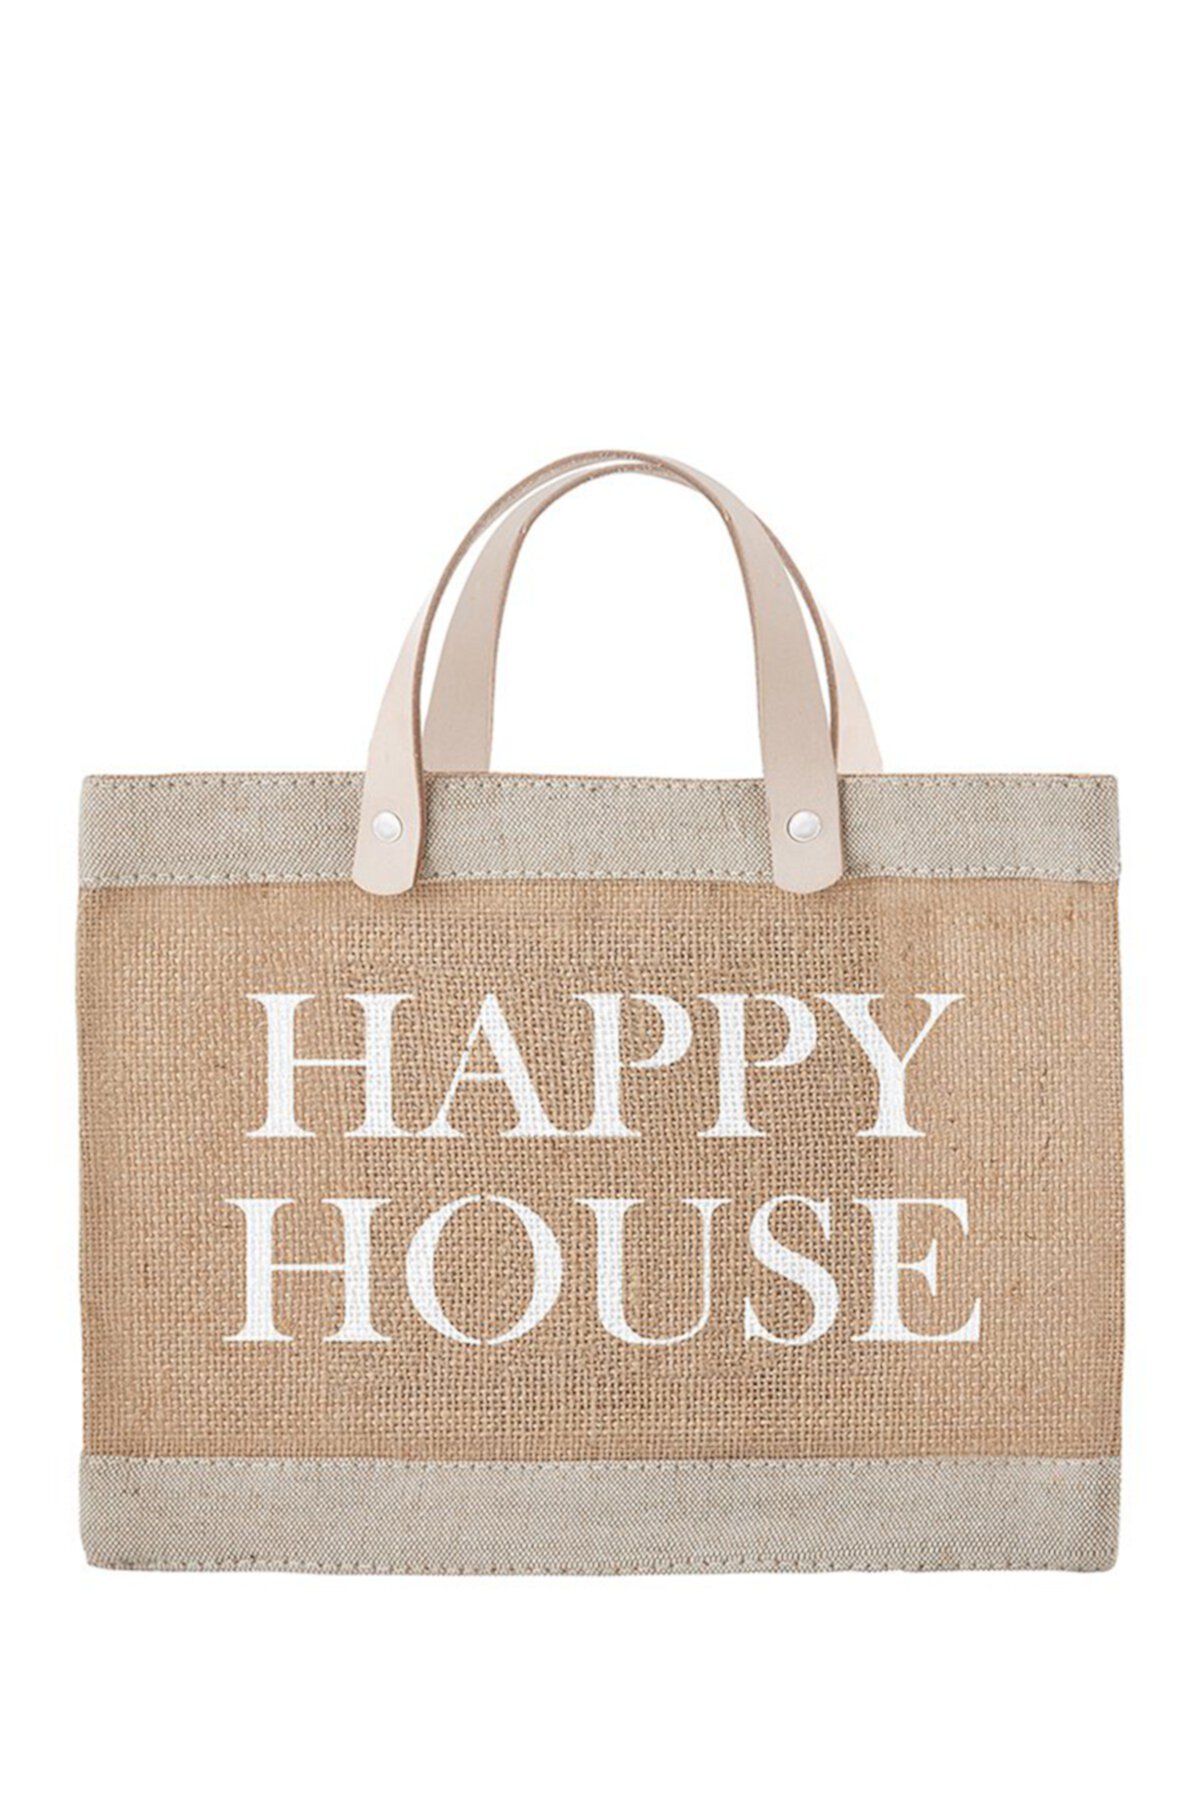 Товар хэппи. Сумка House. Пакет Happy House. Хэппи Хаус сумка. Сумка House brand.